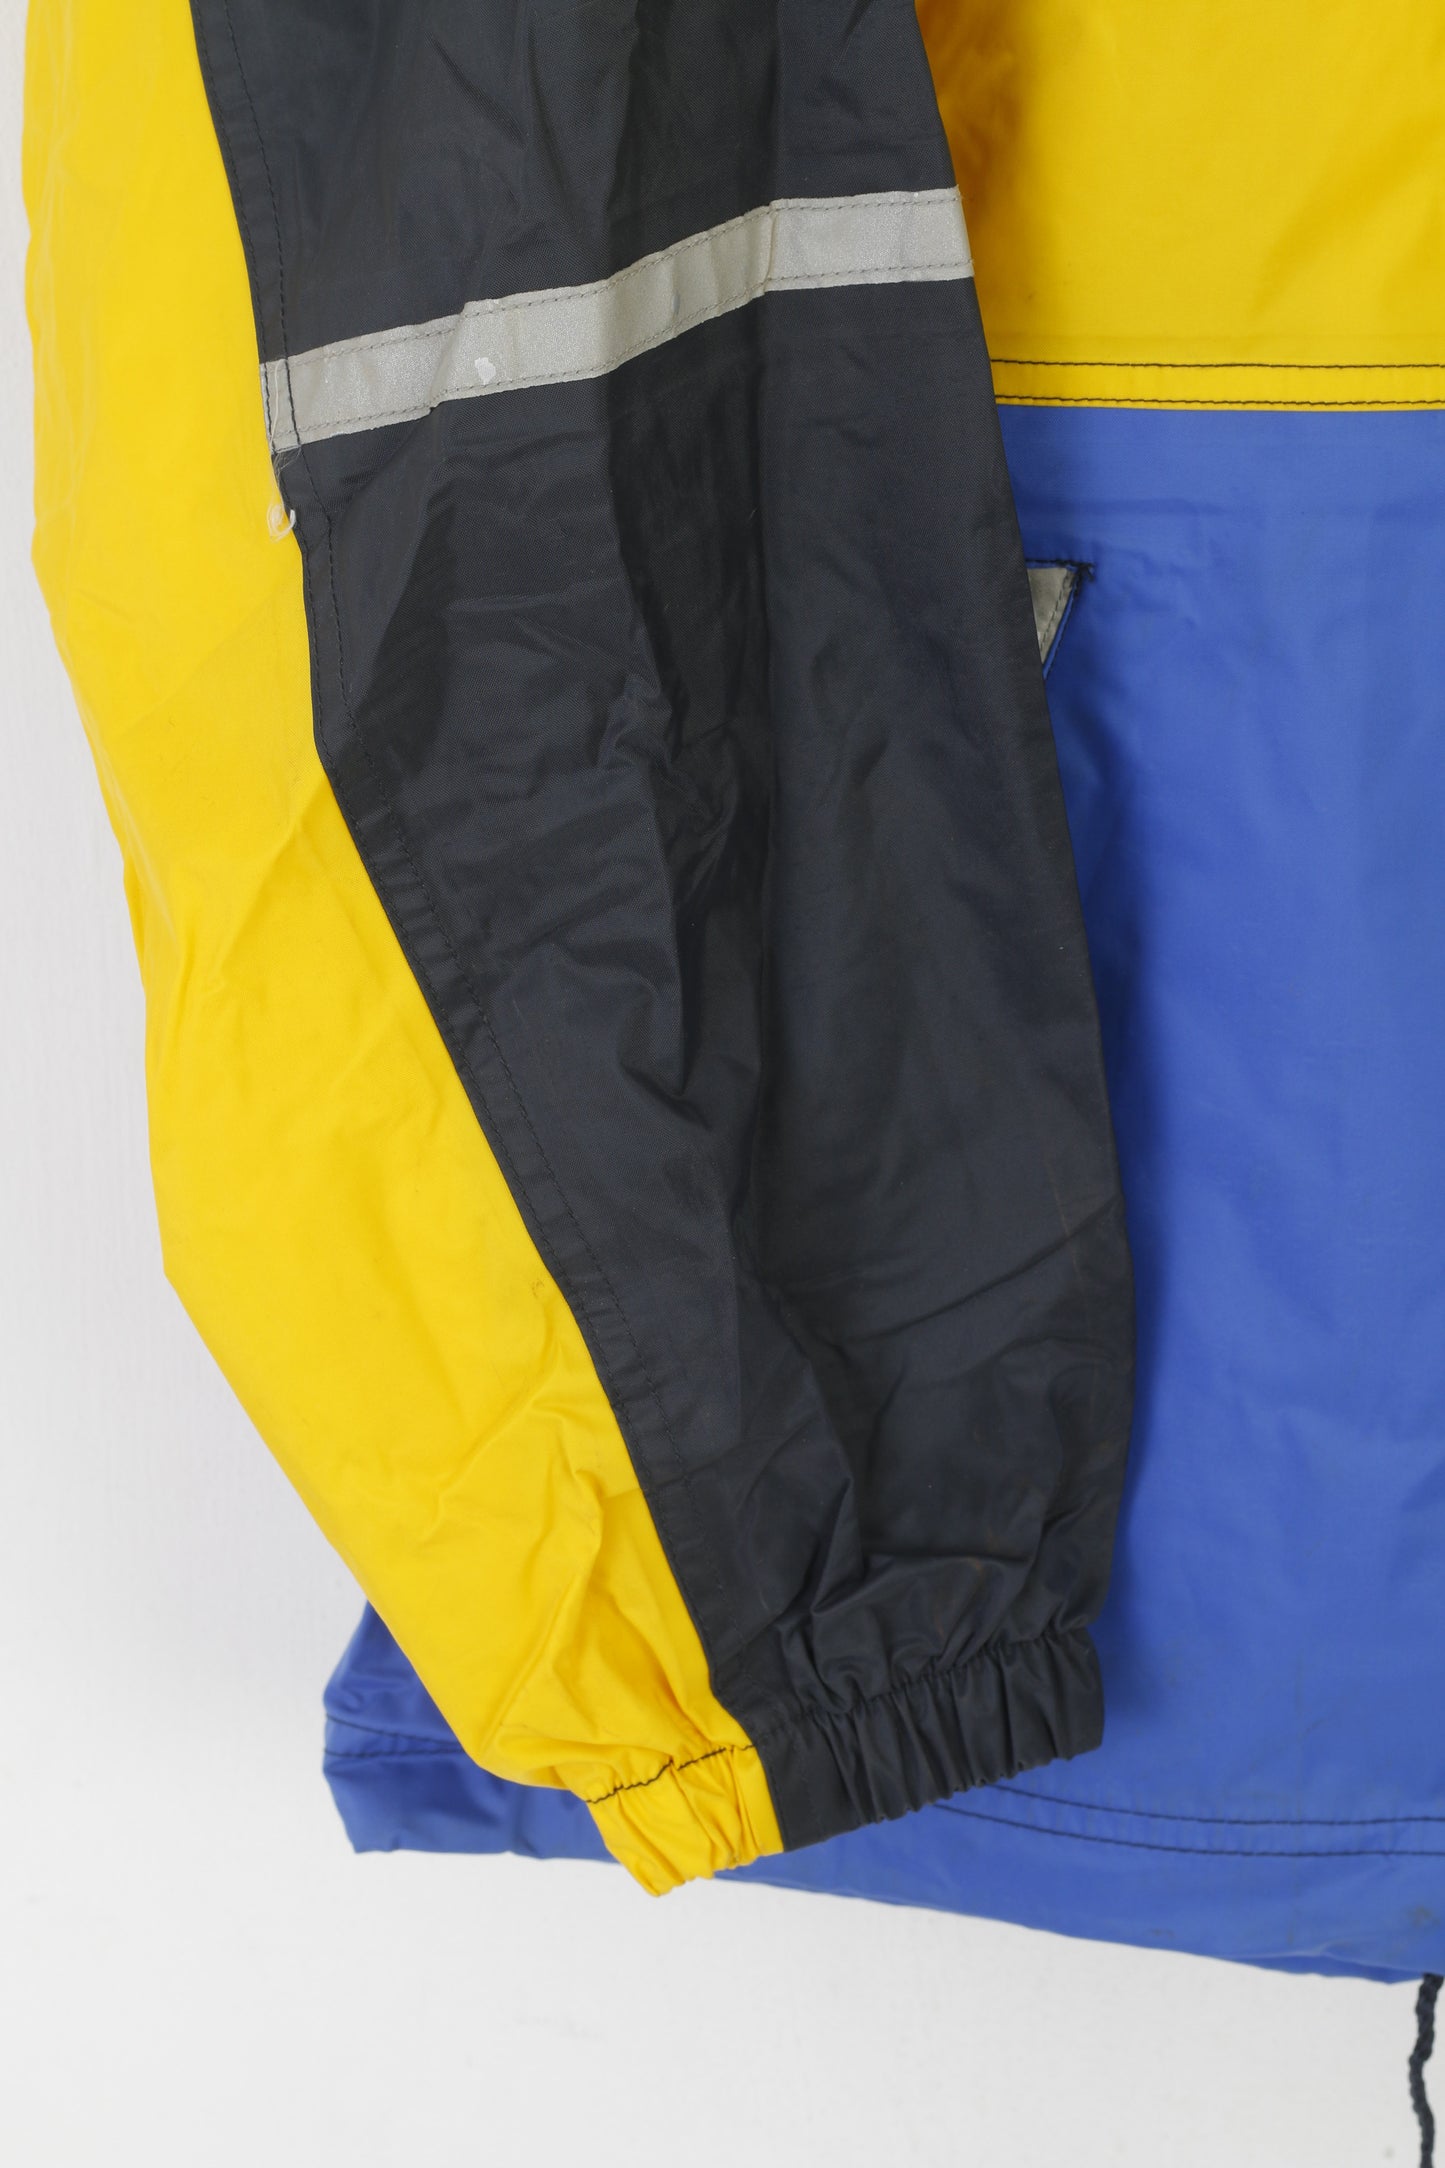 Giacca Formicula Boys 164 Top riflettente con cappuccio impermeabile in nylon blu giallo